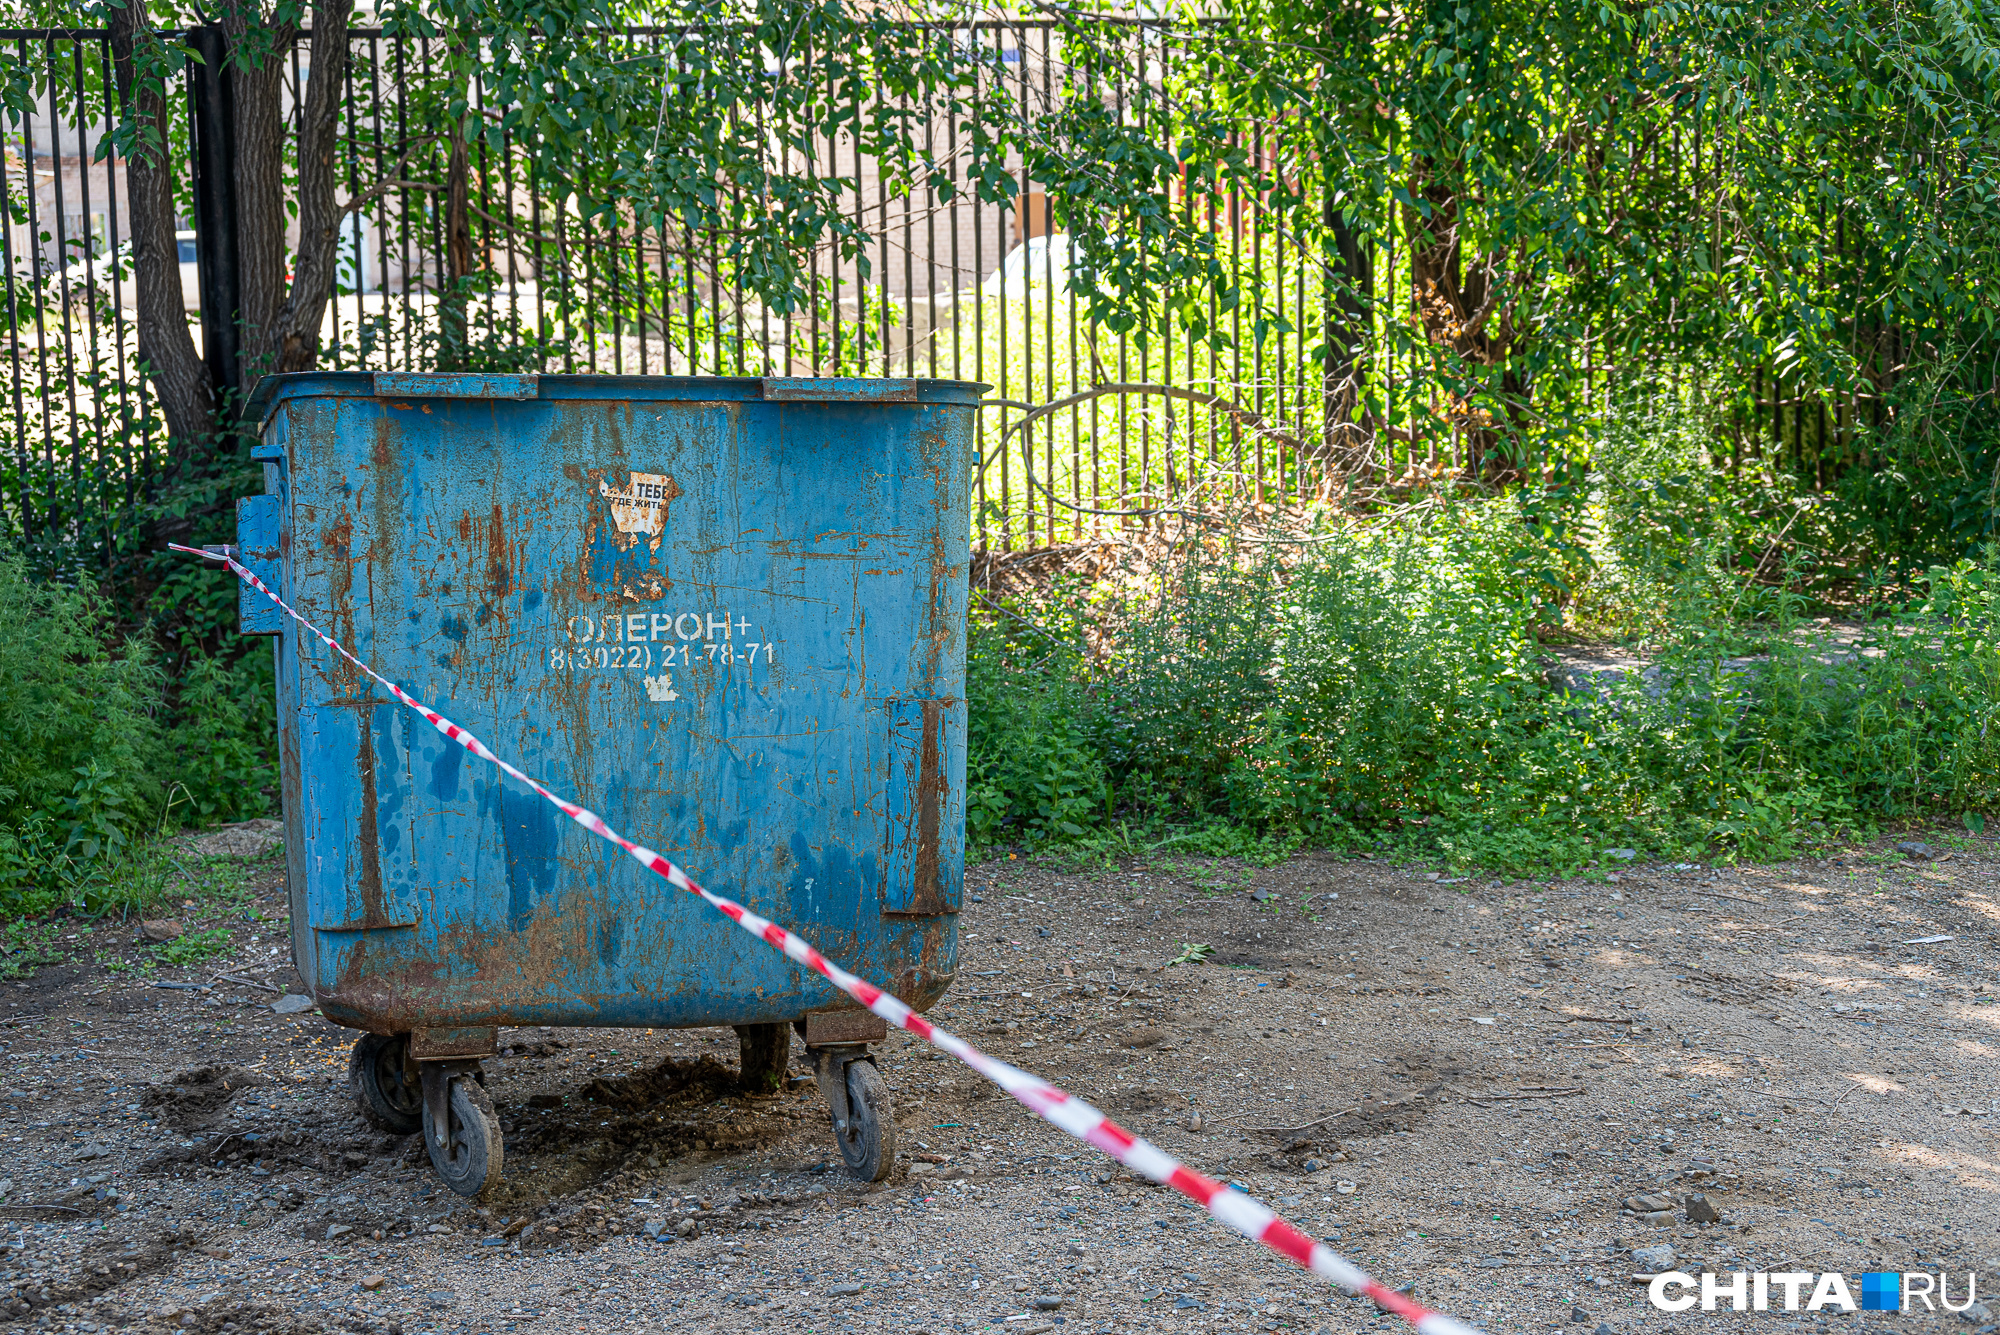 Цена на вывоз мусора вырастет в Забайкалье с 1 июля